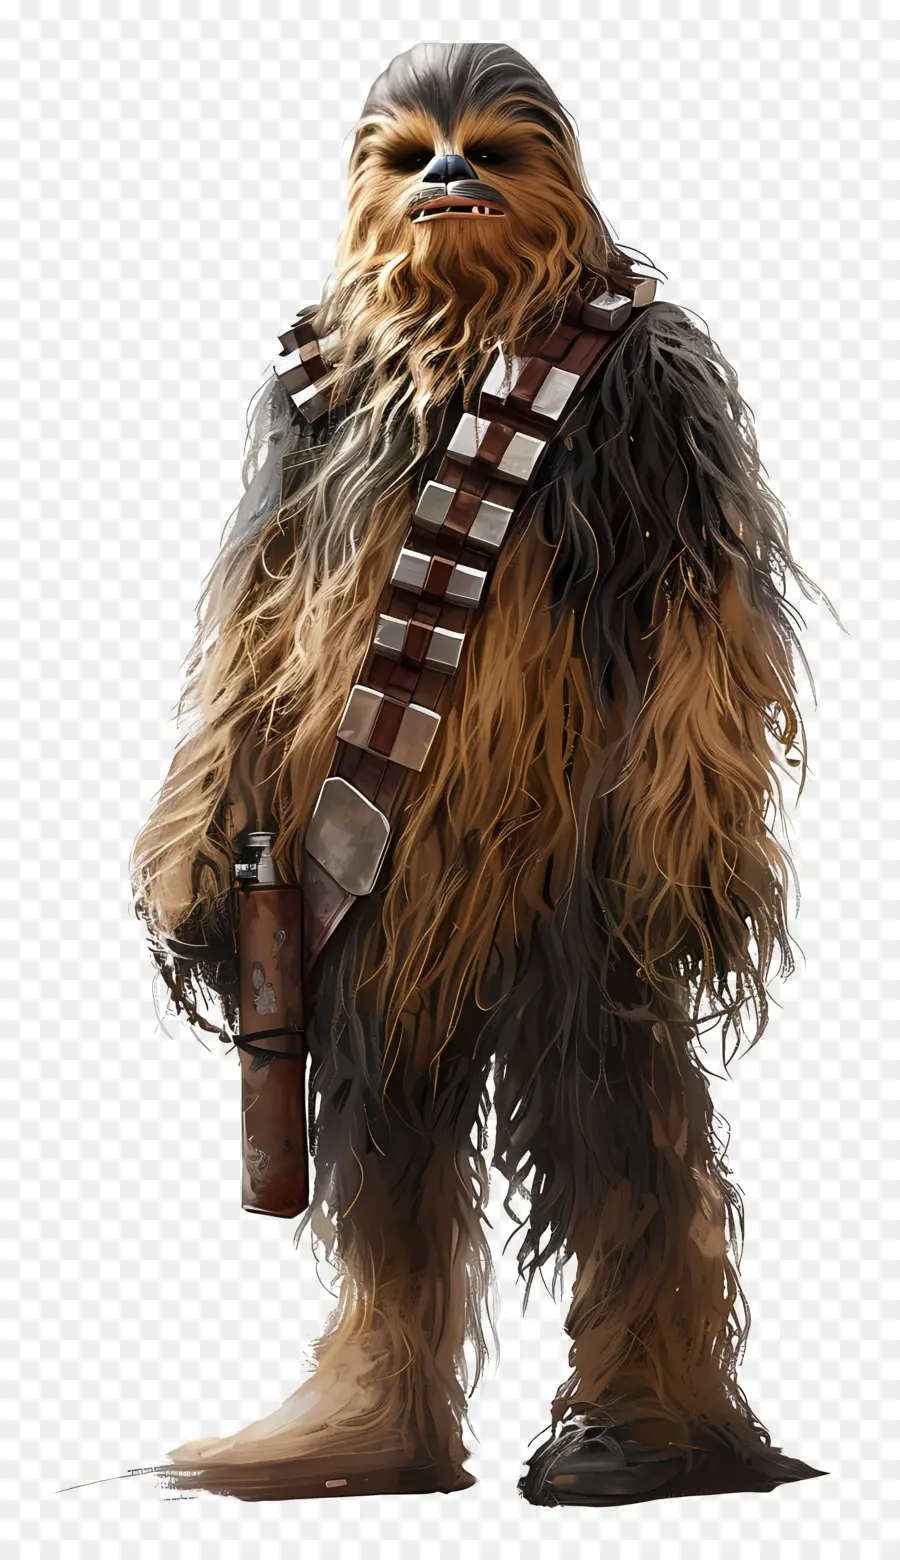 Guerre stellari - Chewbacca, wookiee con arma, sfondo nero